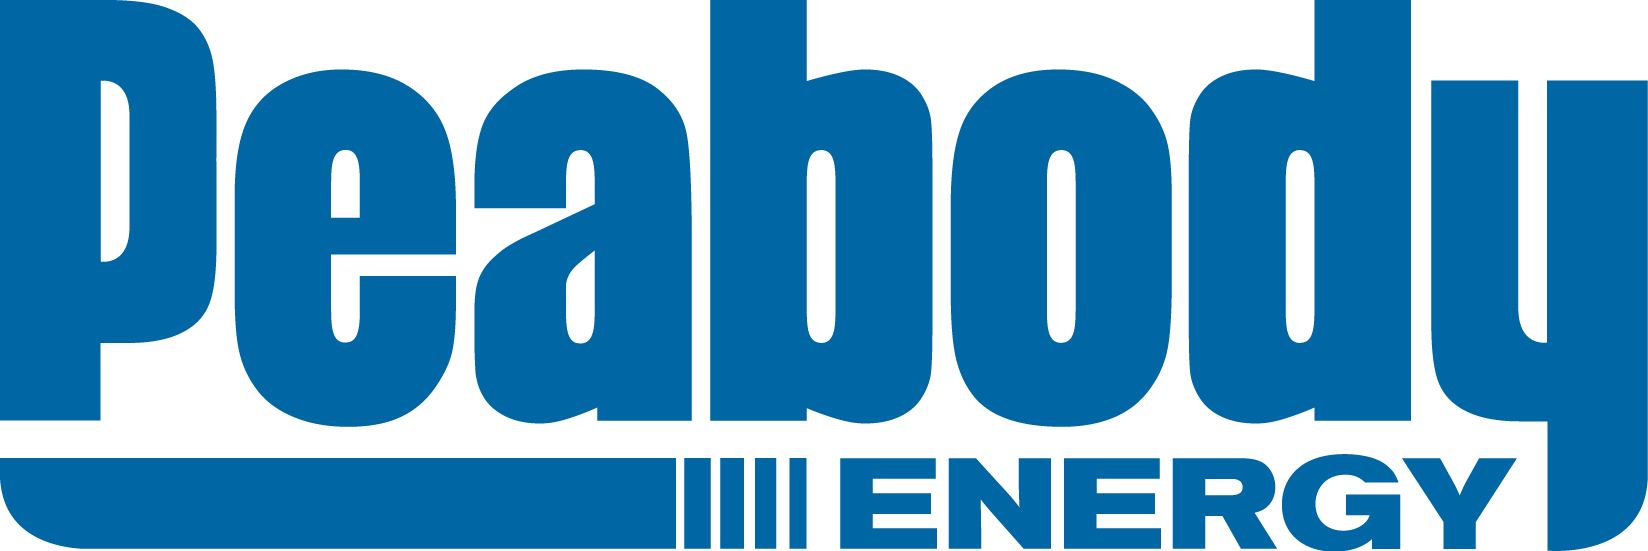 Peabody Logo - no background